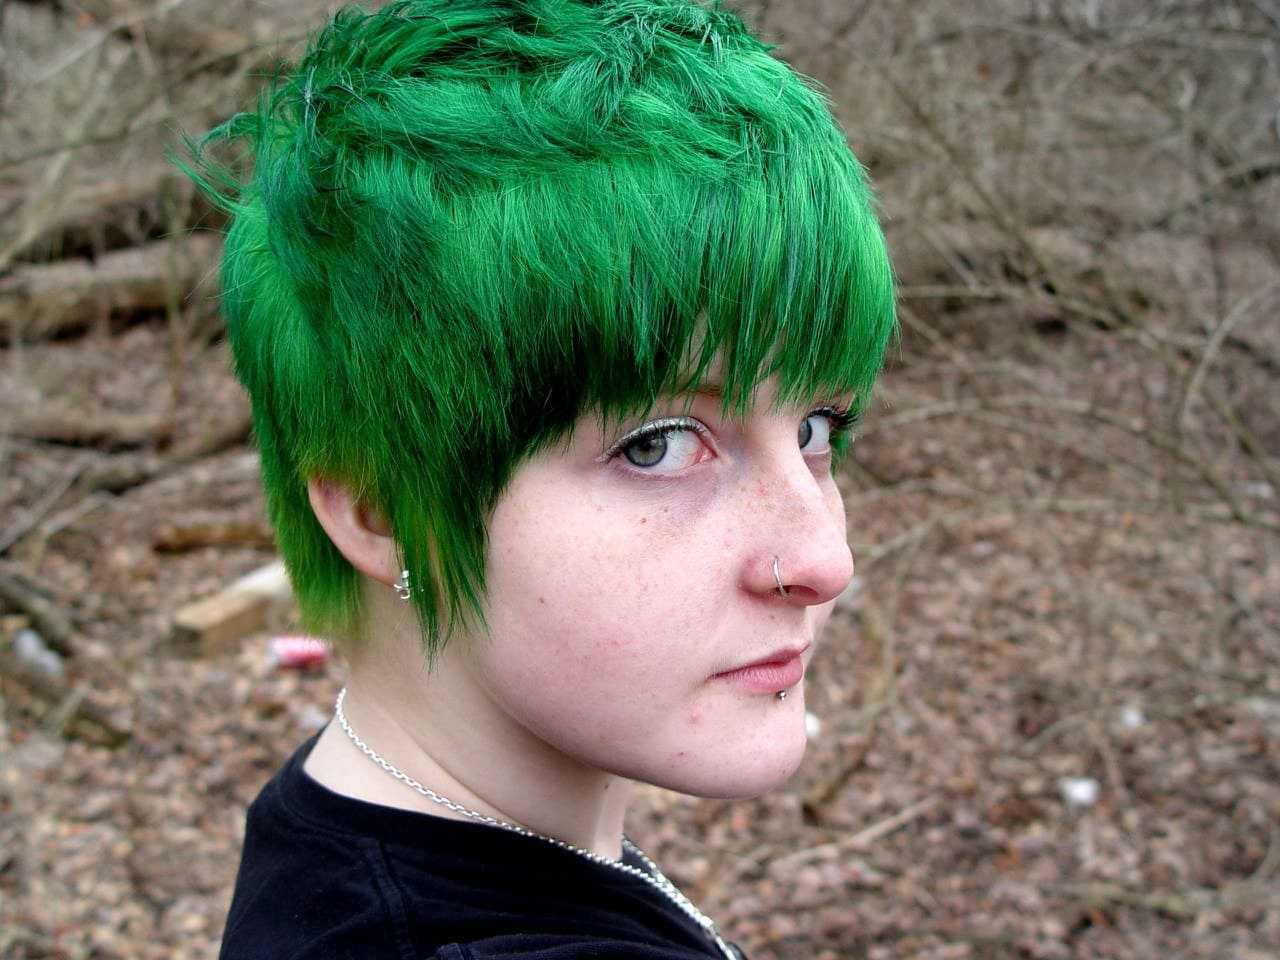 Что означает зеленый цвет на волосах